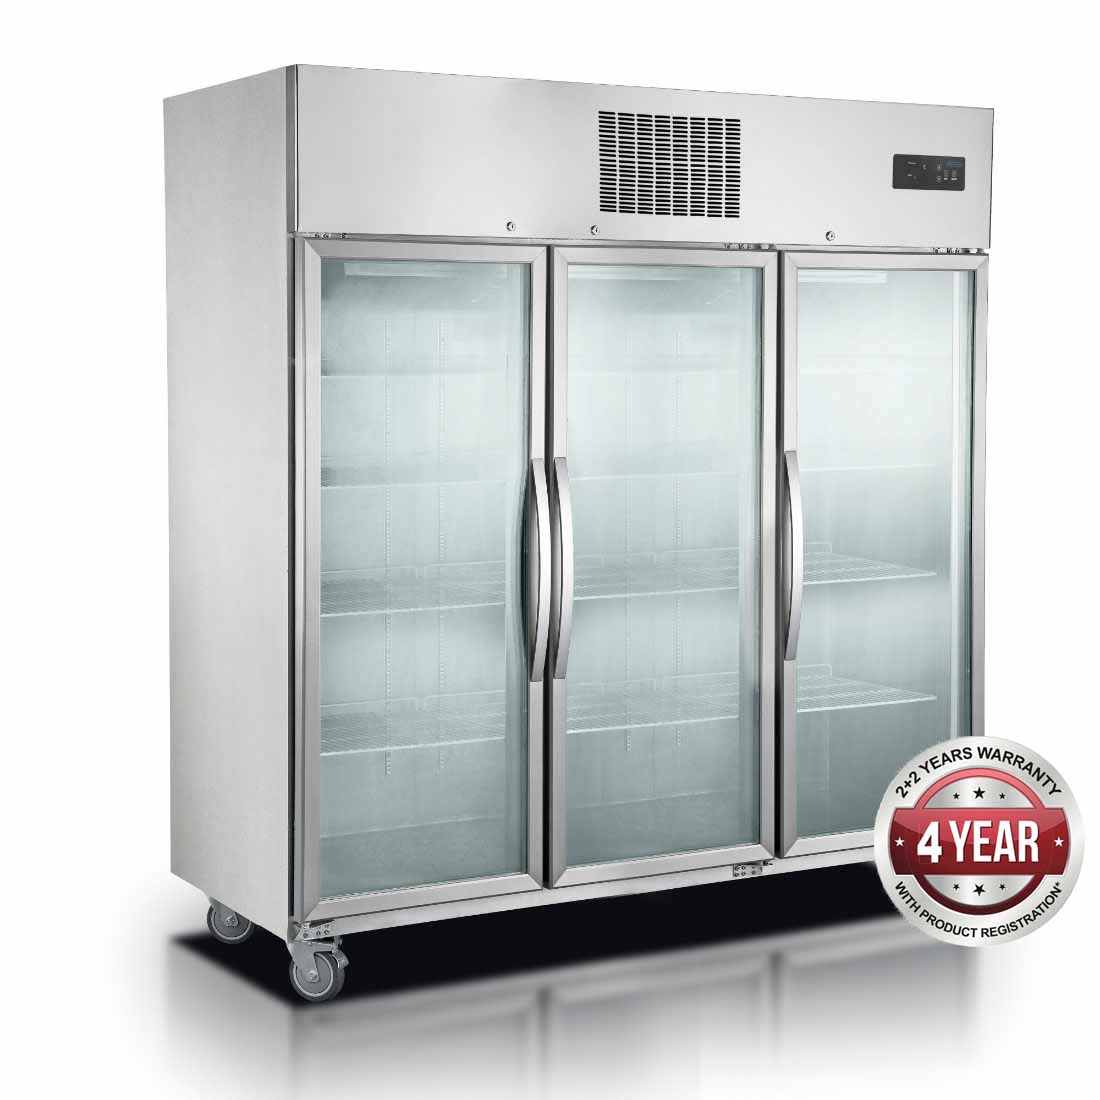 Comchef SUFG1500 Three Door Upright Display Freezer